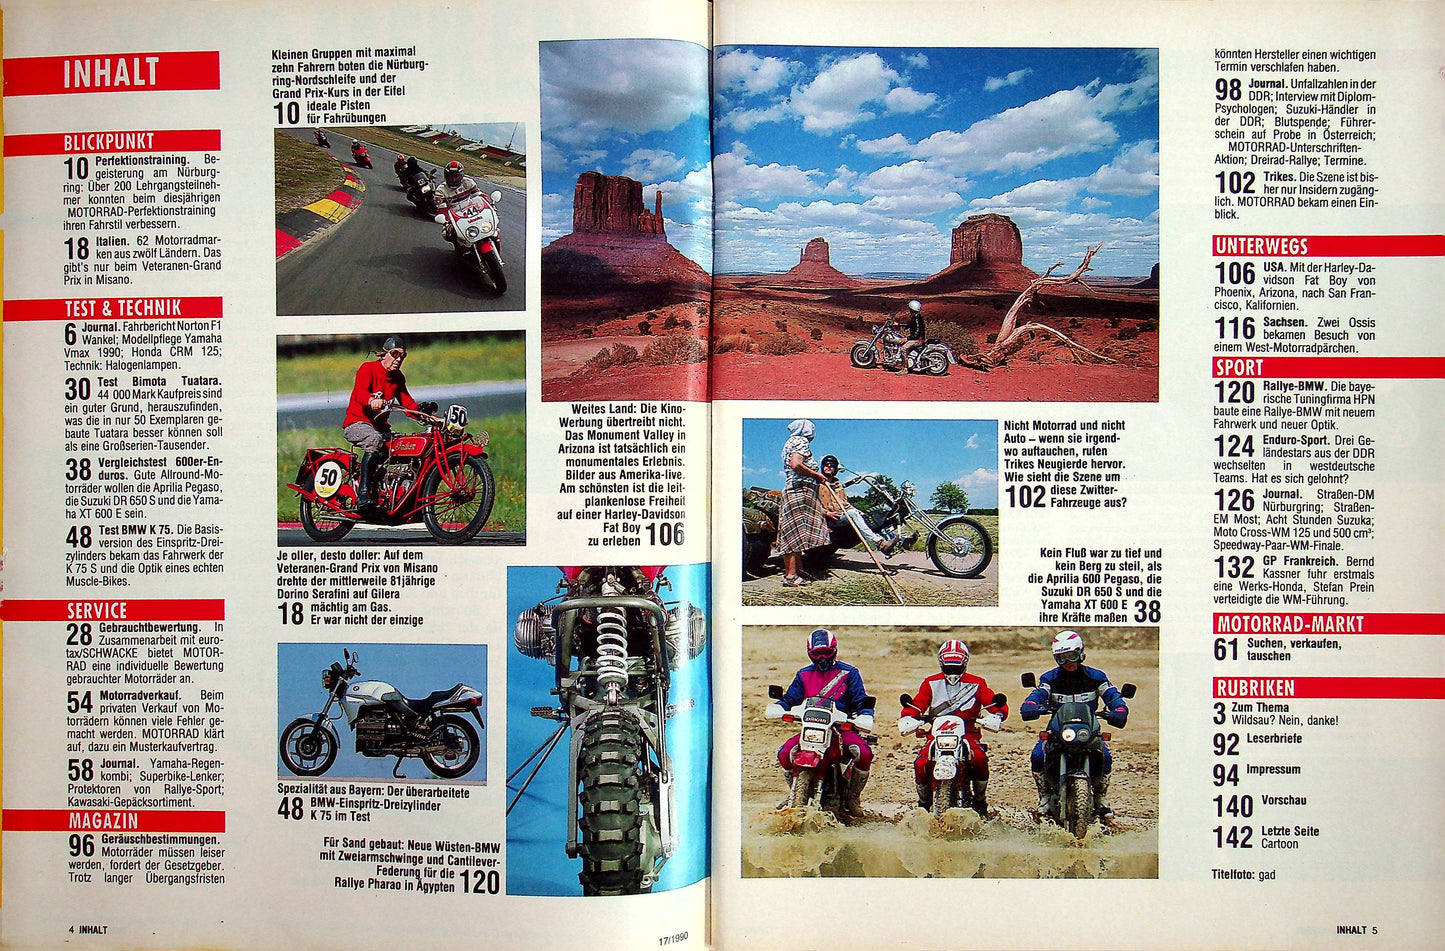 Motorrad 17/1990